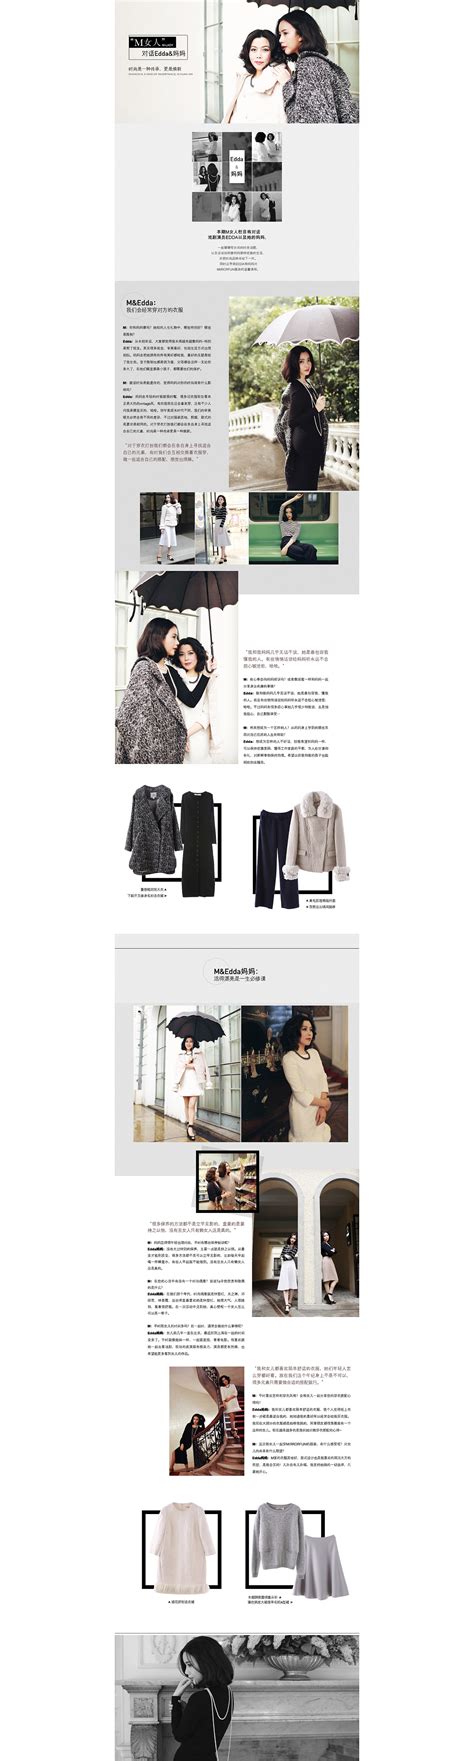 品牌服装网站 - 原创设计作品展示 - 大美工dameigong.cn